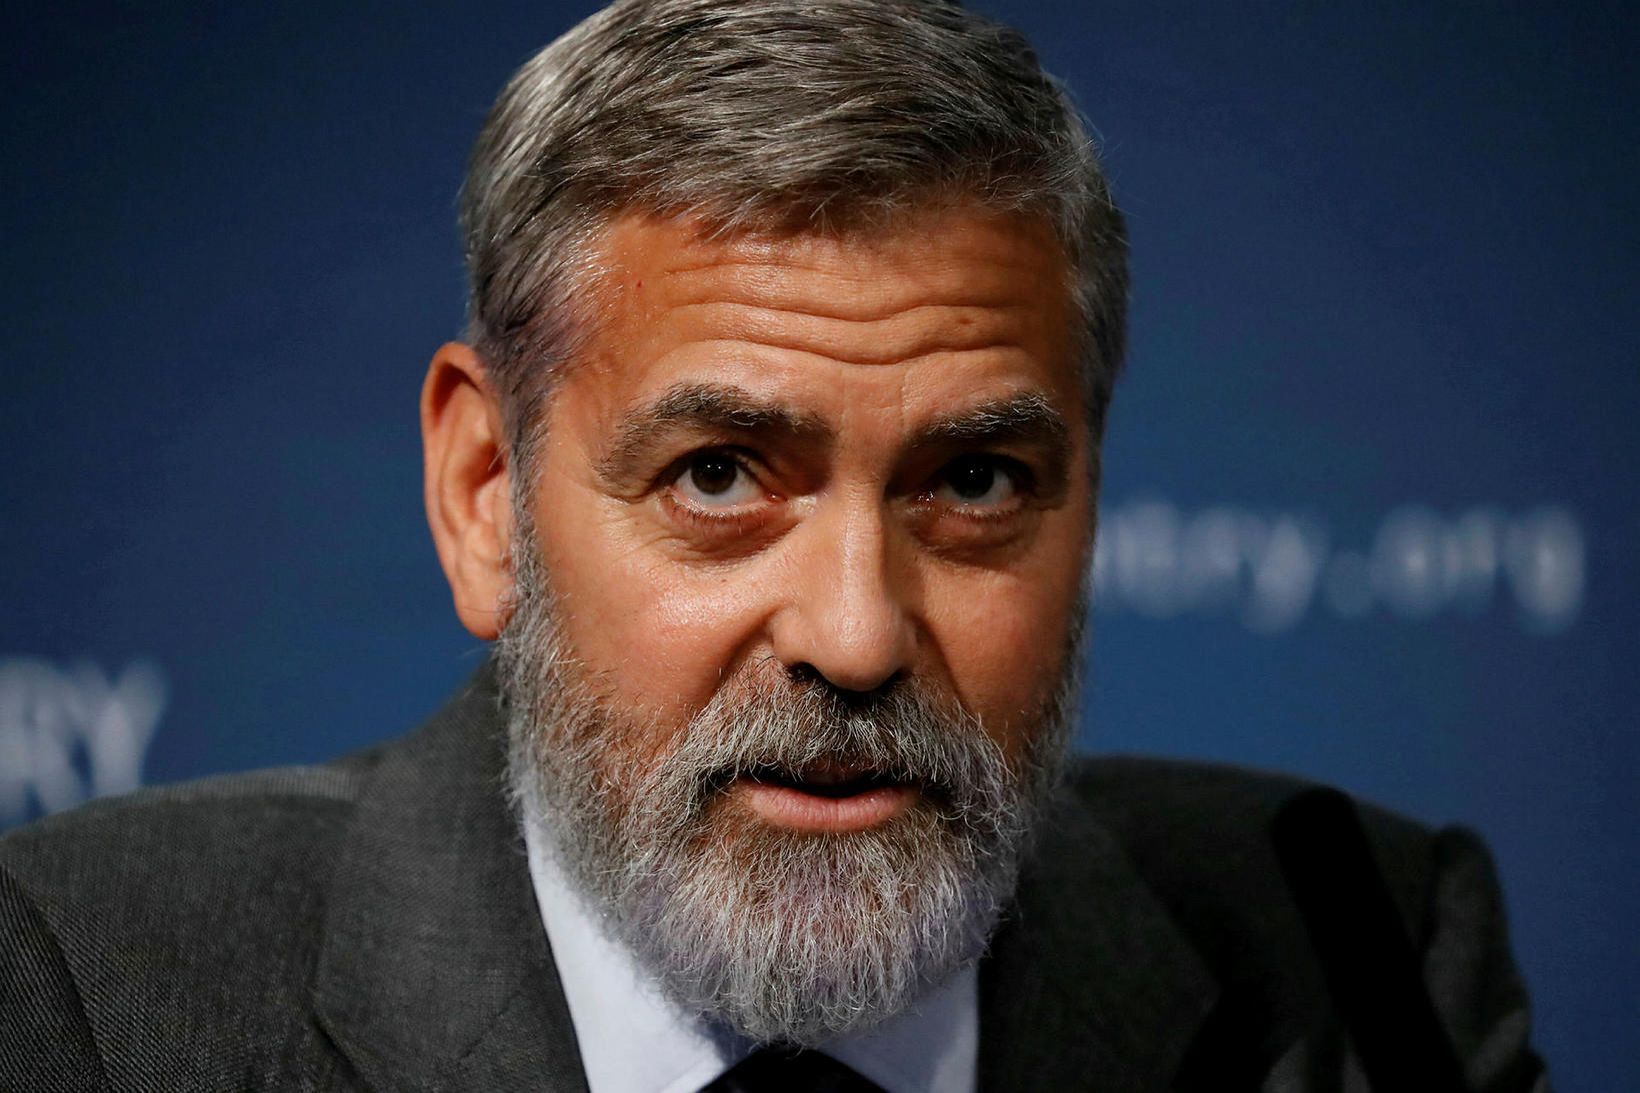 George Clooney hefur tvisvar verið valinn kynþokkafyllsti maður í heimi.